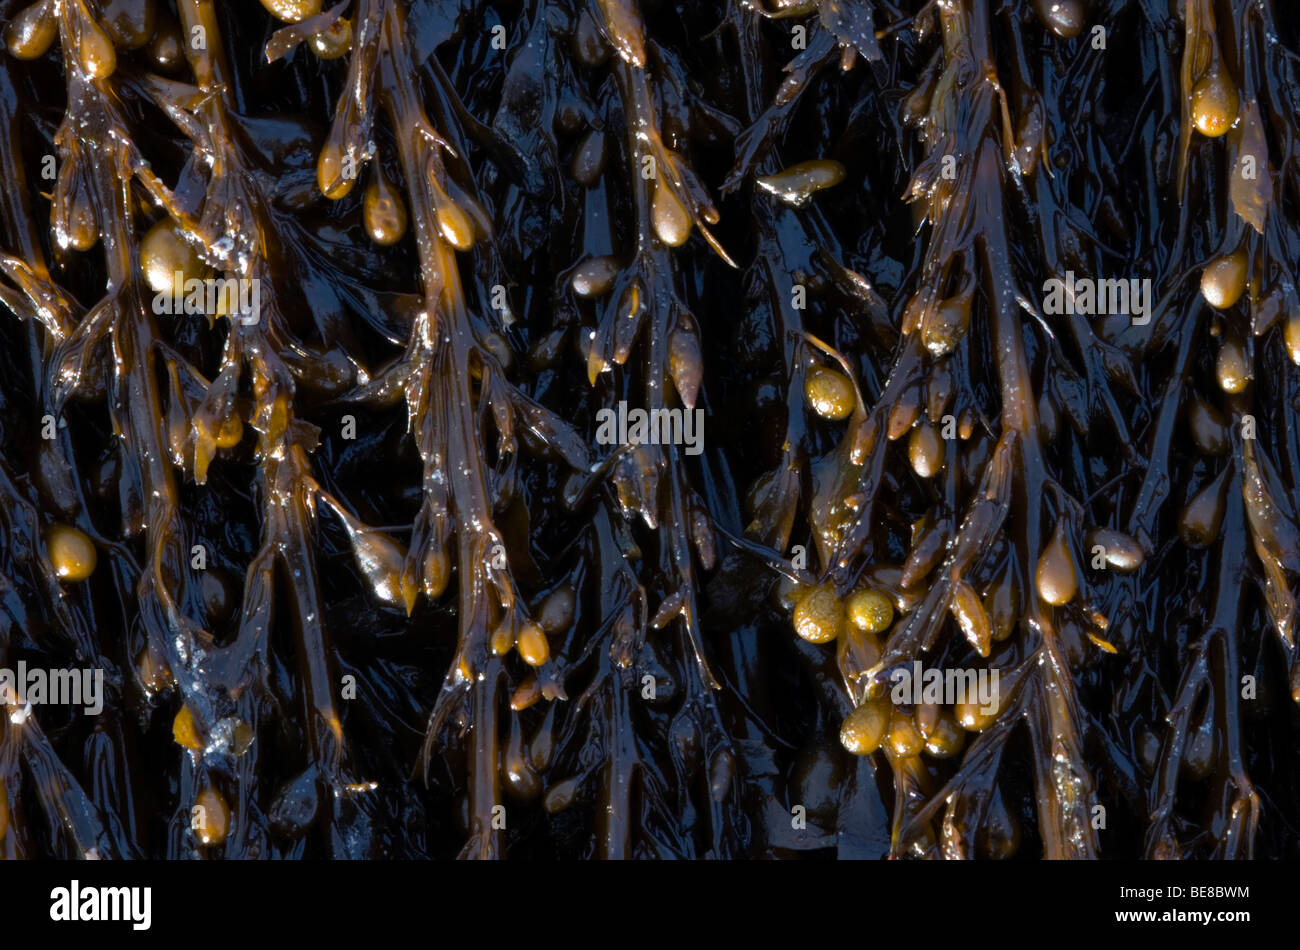 Japans bessenwier; Sargassum muticum; japweed Foto de stock